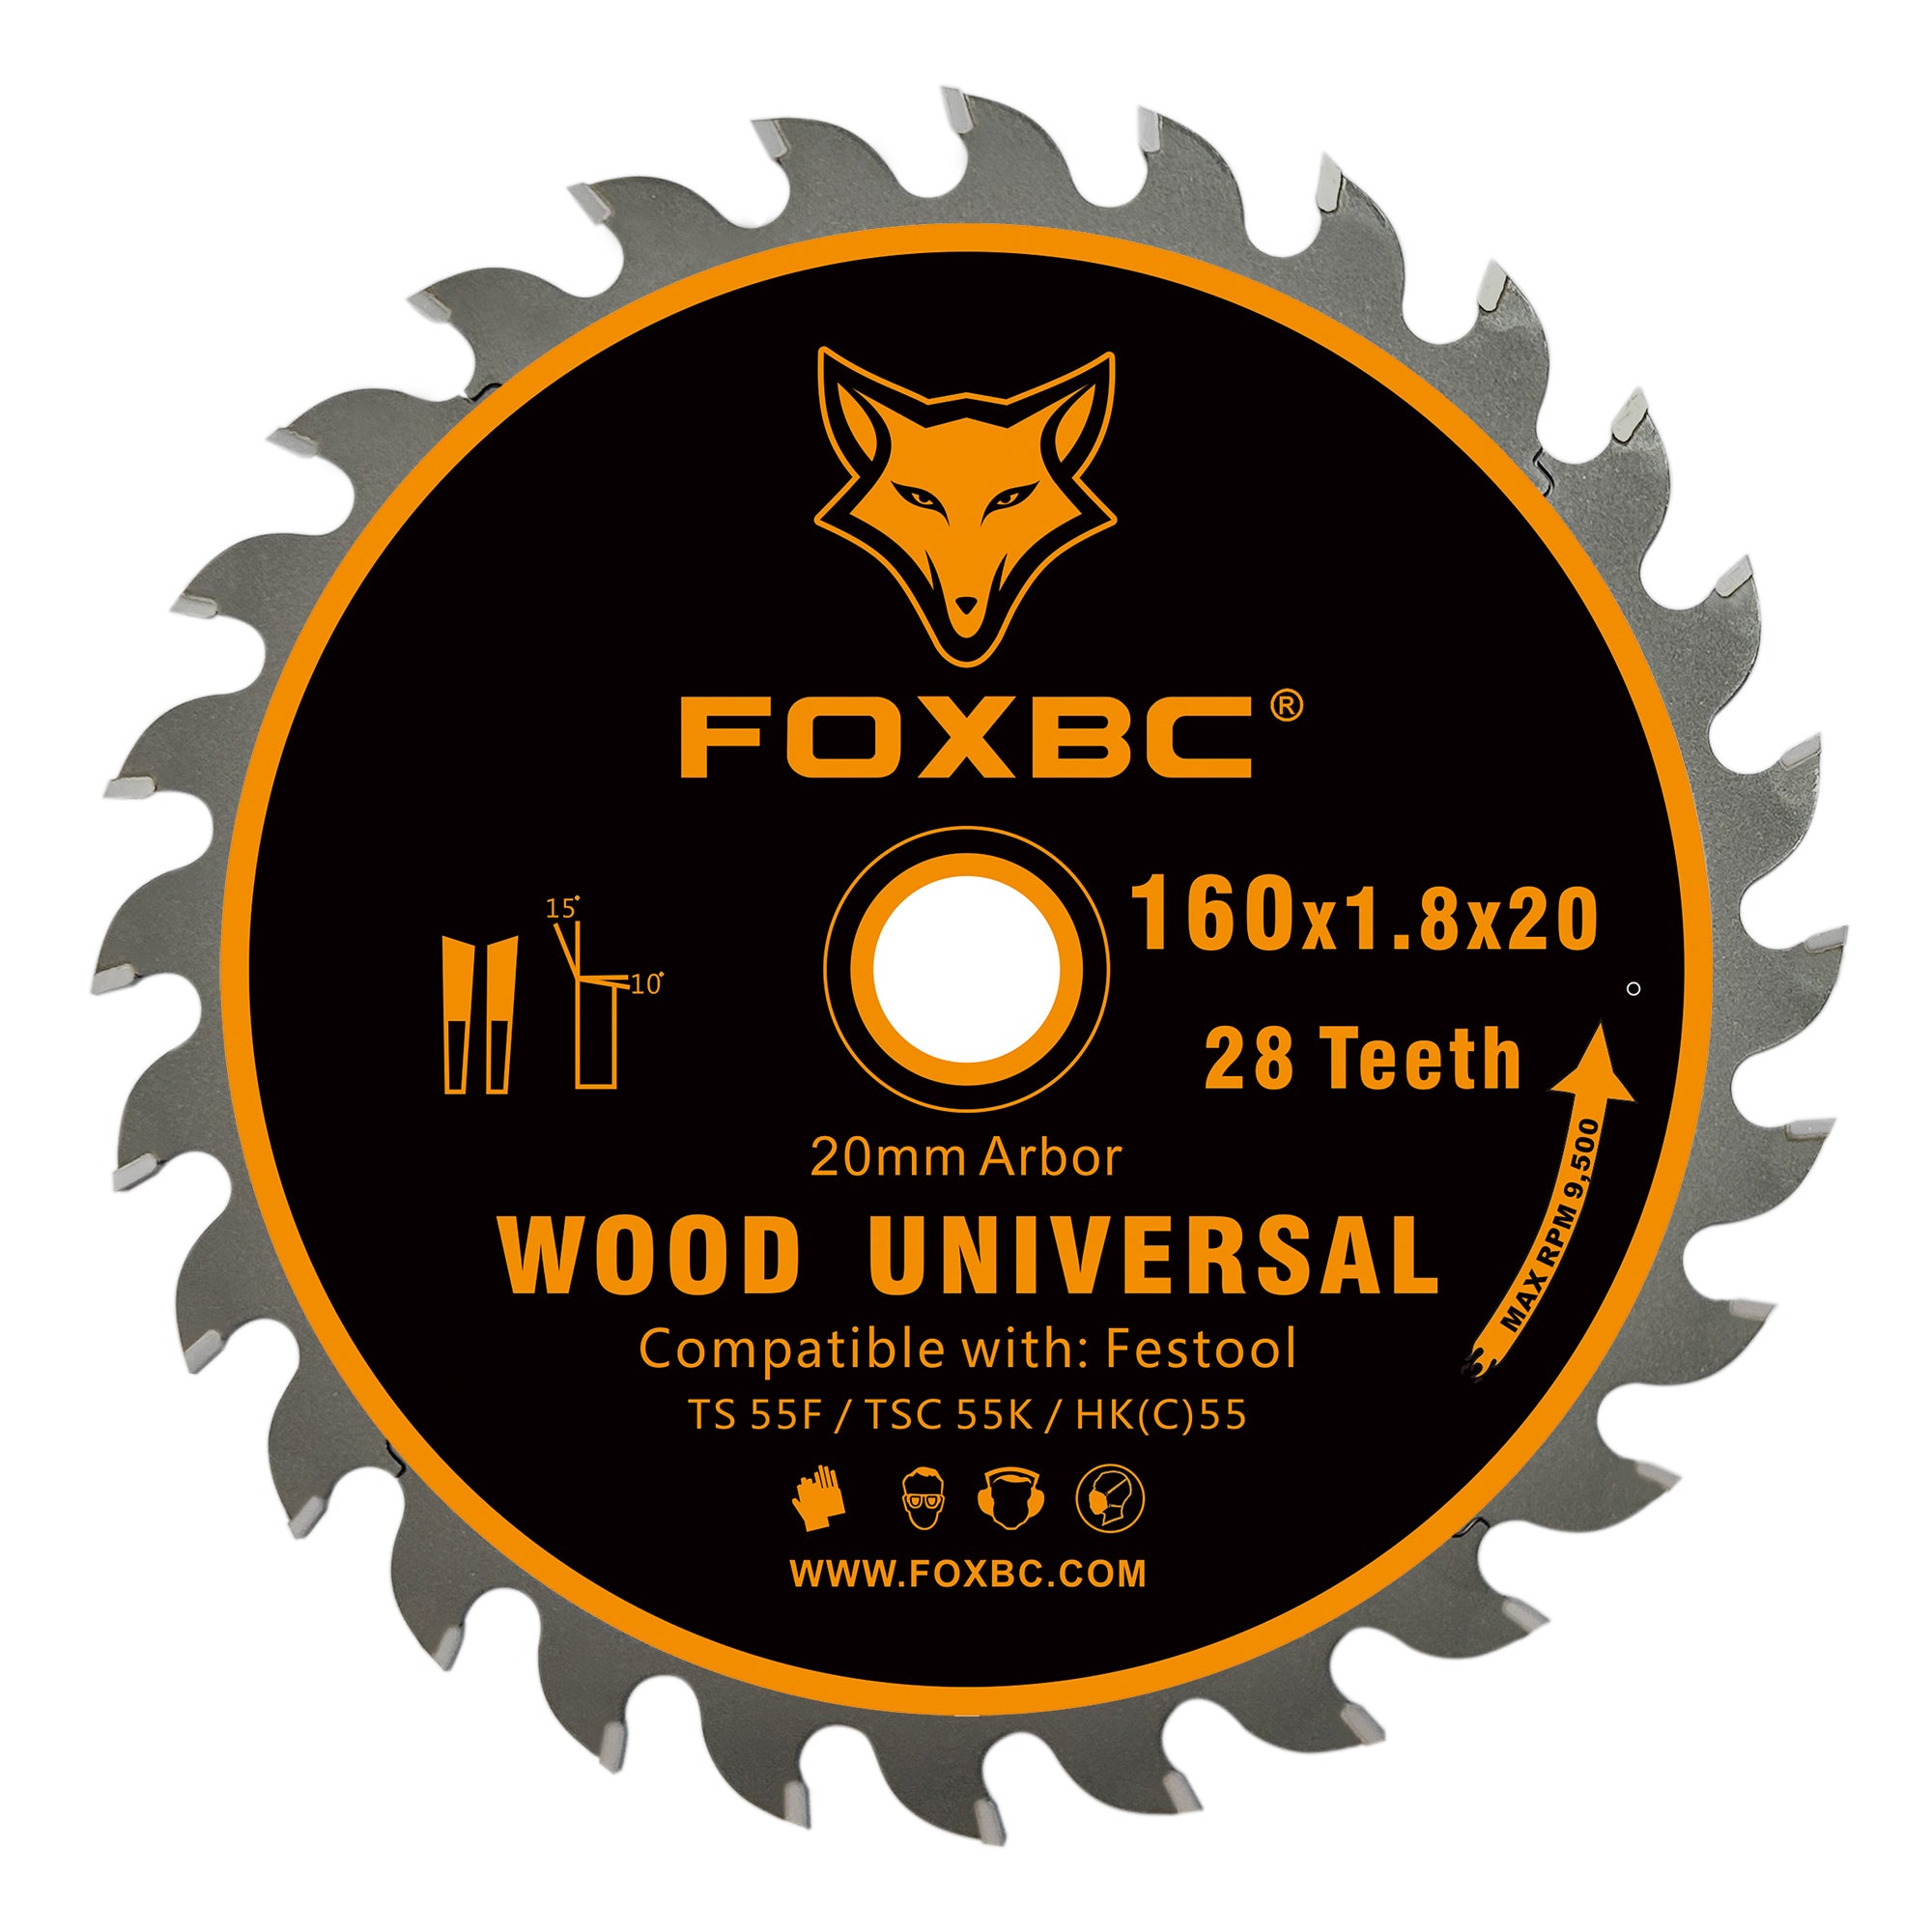 FOXBC 205560 Kettensägenblatt 28 Zähne 160 x 1,8 x 20 mm für Festool TS 55 F, TSC 55 K, HK 55 und HKC 55, Wood Universal